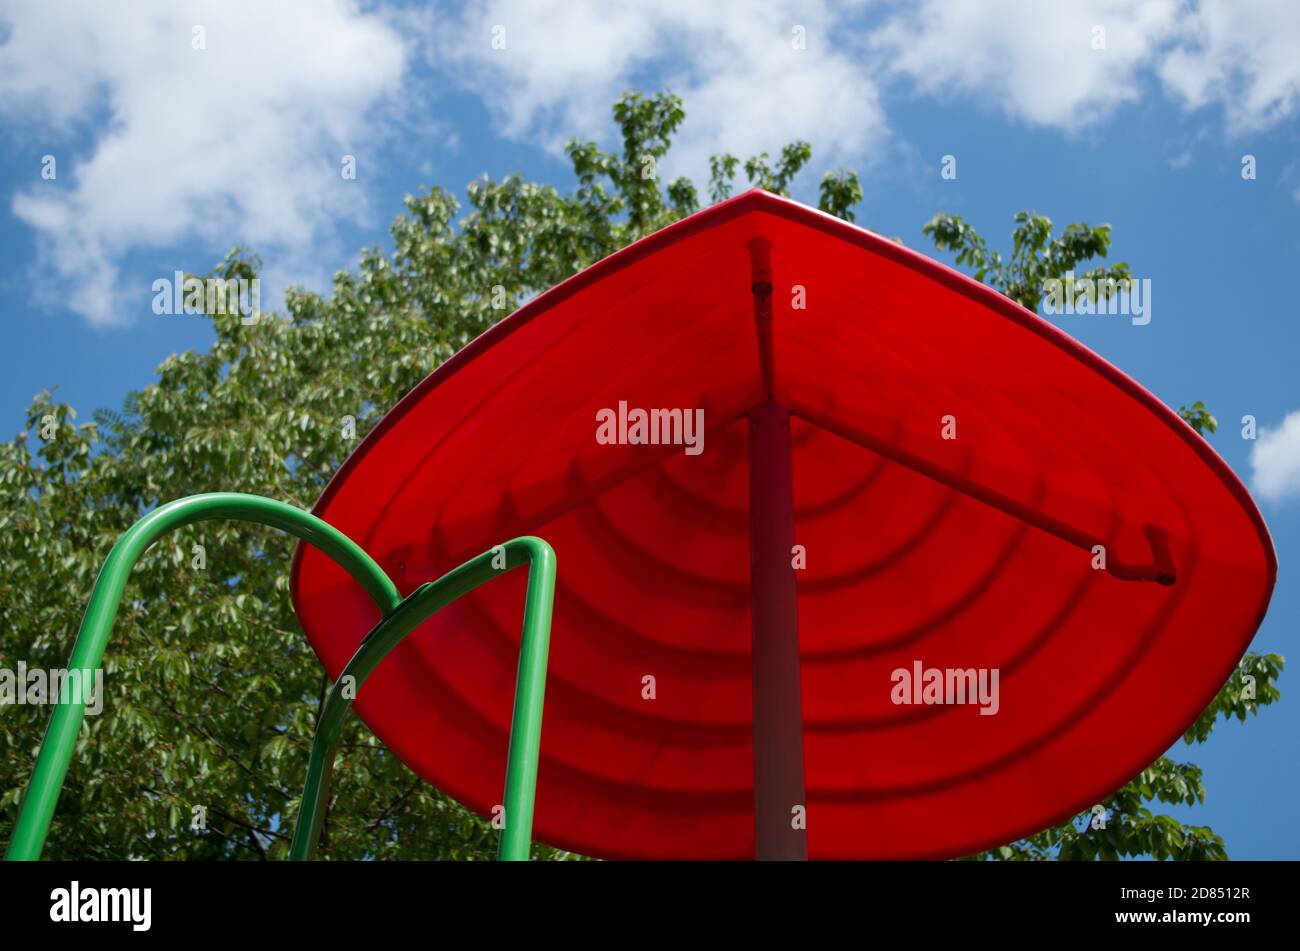 Rote Pyramide oder Schirm geformt Visier mit grünen Handlauf führenden Ihm auf dem Kinderspielplatz auf dem Hintergrund des Baumes Laub und wolkig blauer Himmel Stockfoto